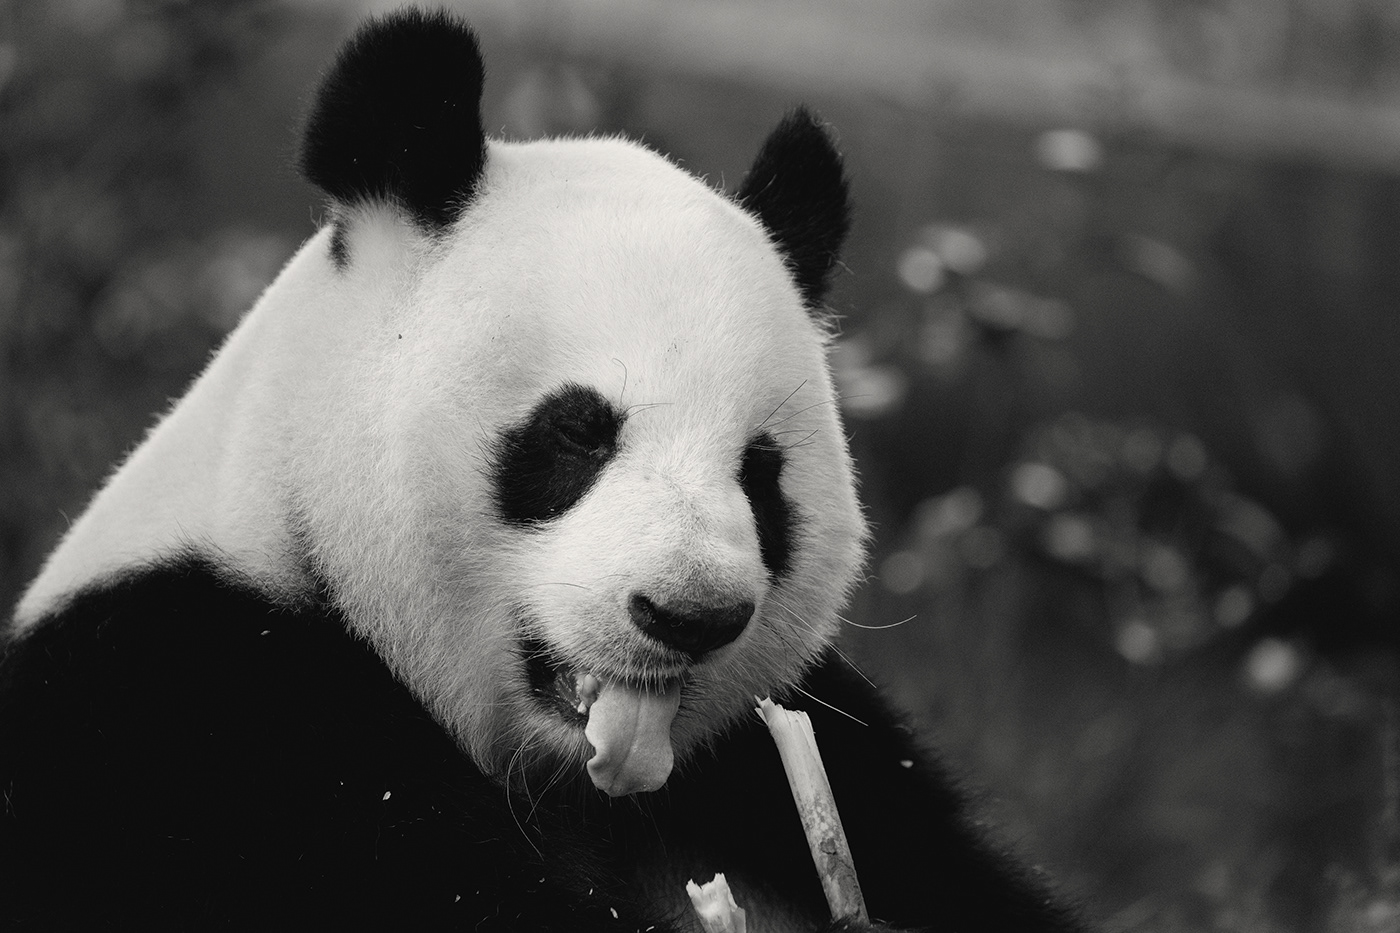 animals b&w black and white china giant pandas Panda  pandas Sichuan wildlife panda bear